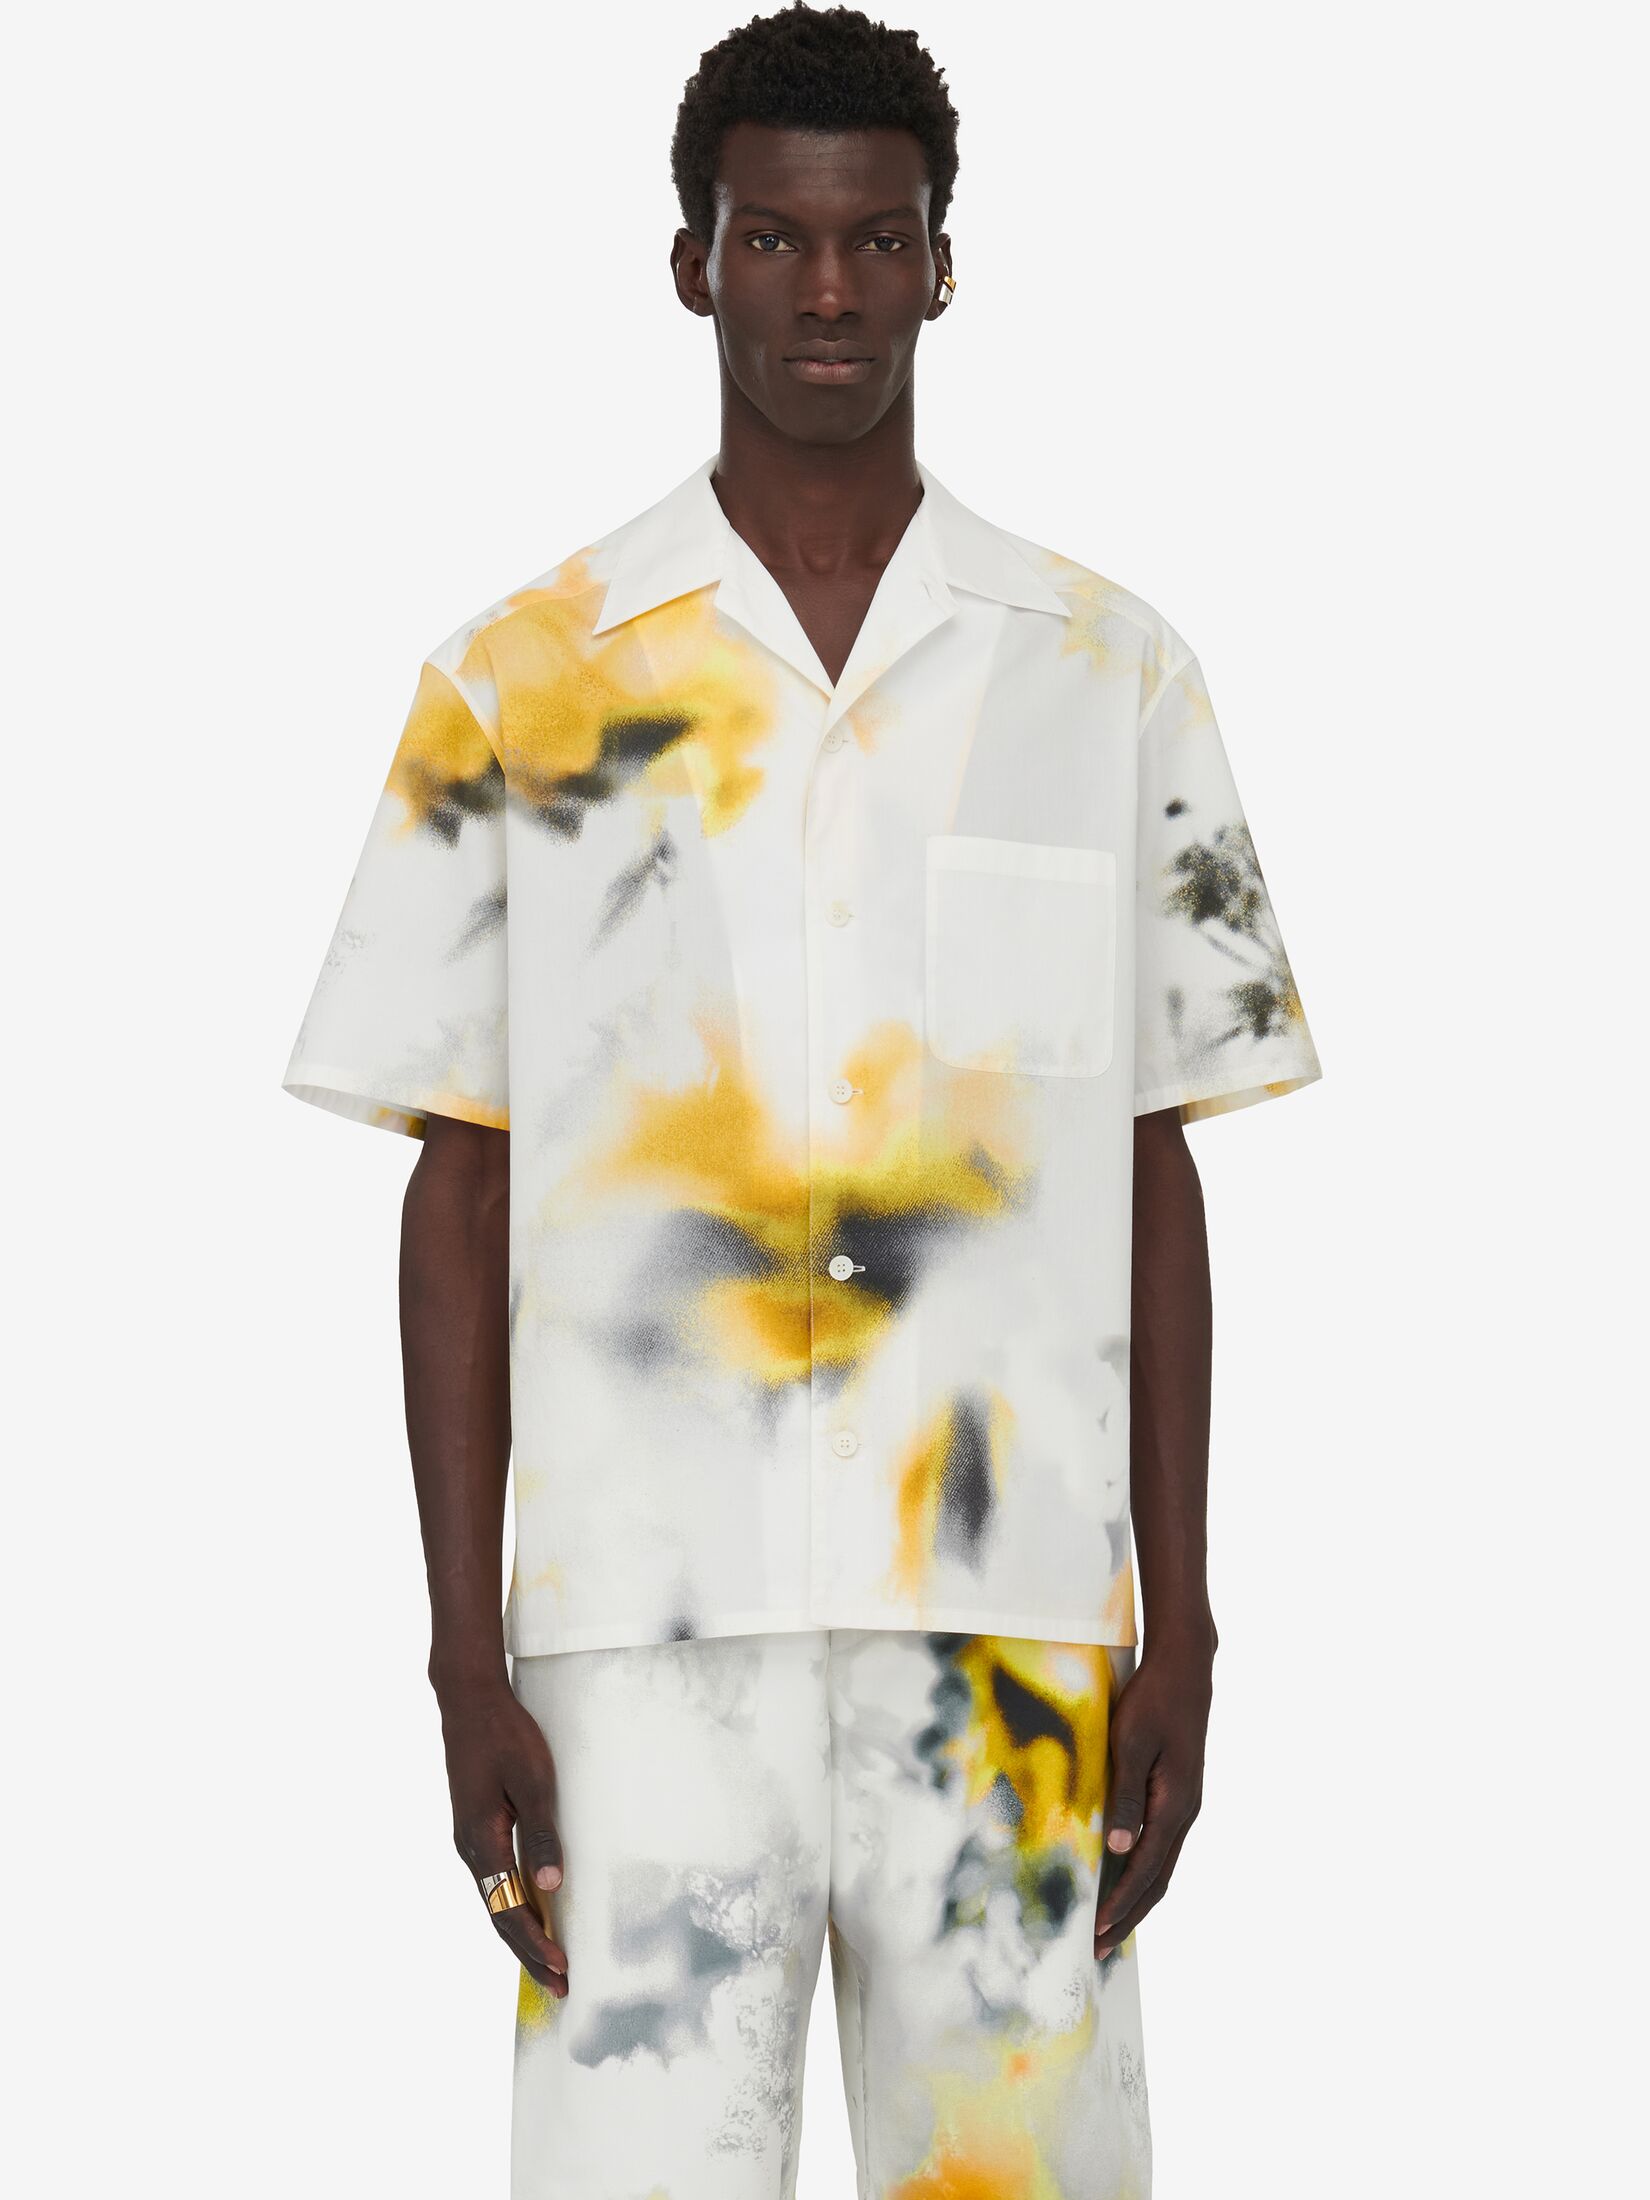 Bowlingshirt mit Obscured Flower-Motiv